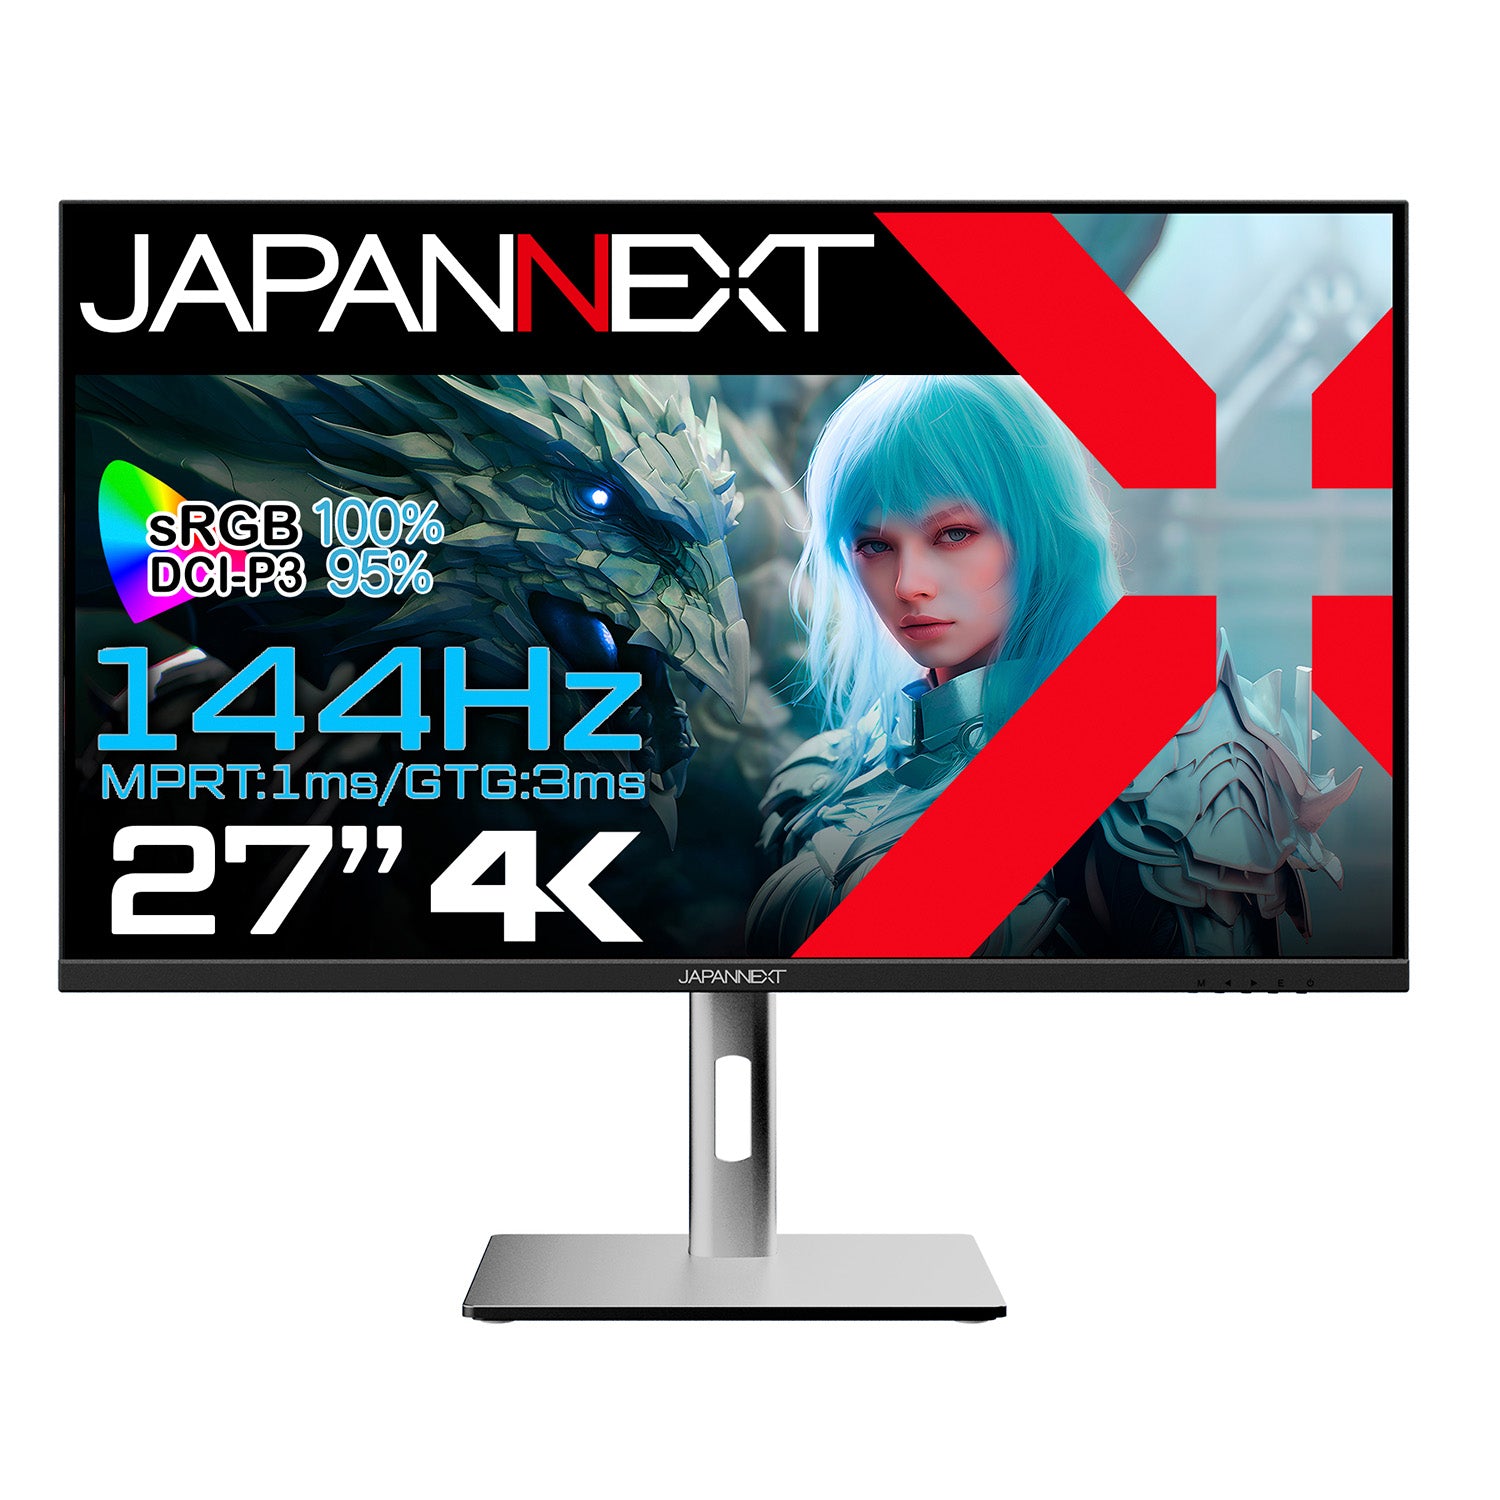 JAPANNEXT 27インチ IPSパネル搭載 4K(3840x2160)解像度 144Hz対応 